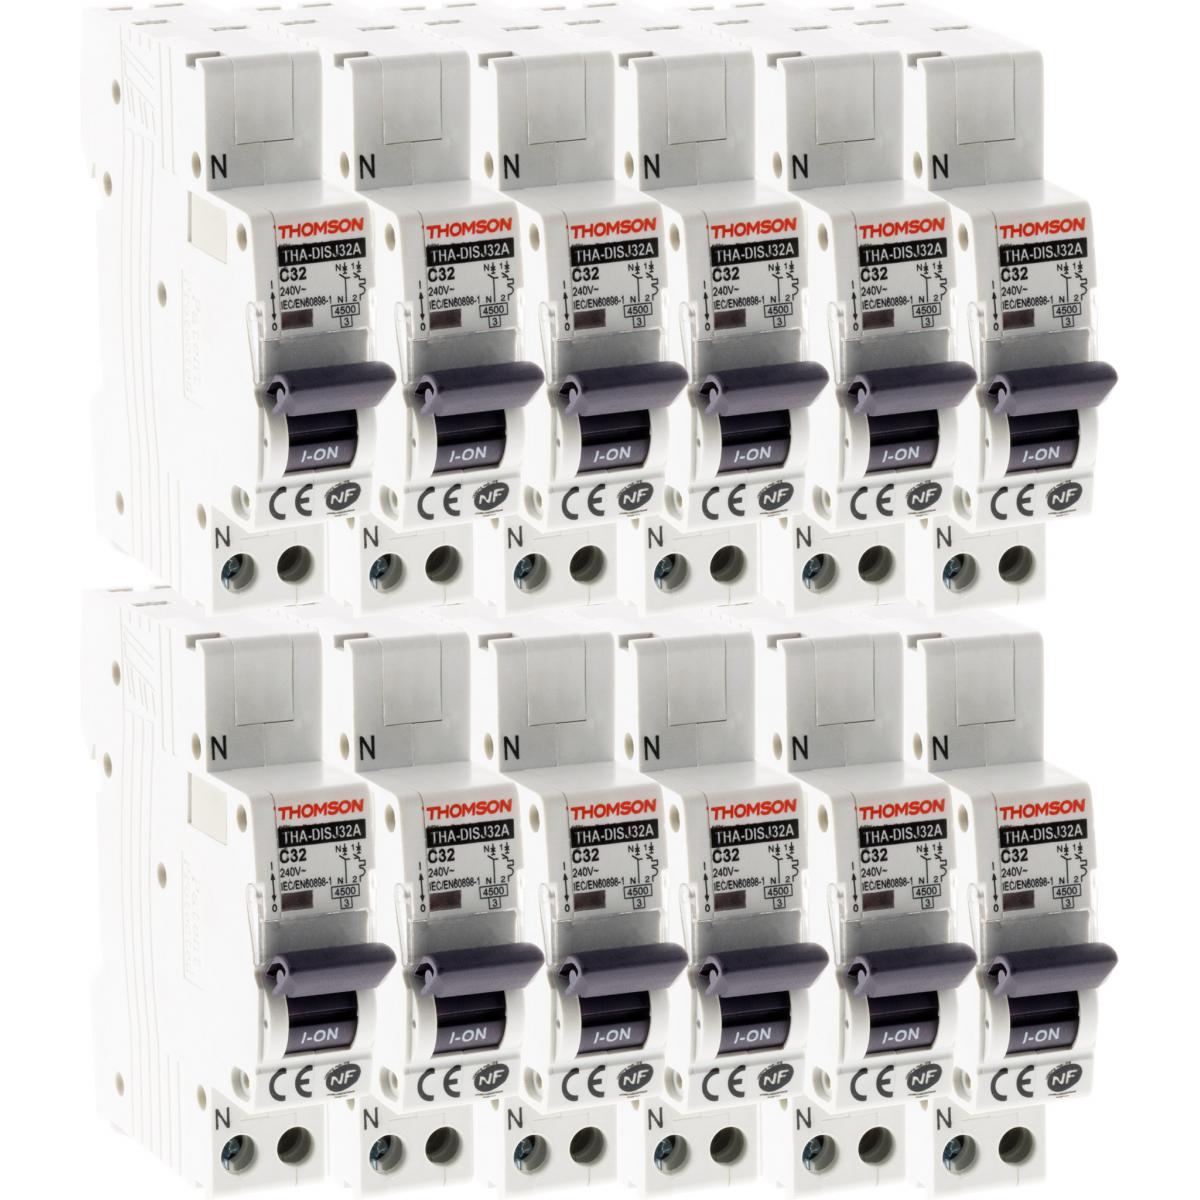 Thomson - Lot de 12 Disjoncteurs à connexions automatiques PH+N Thomson - 32A NF - Coupe-circuits et disjoncteurs